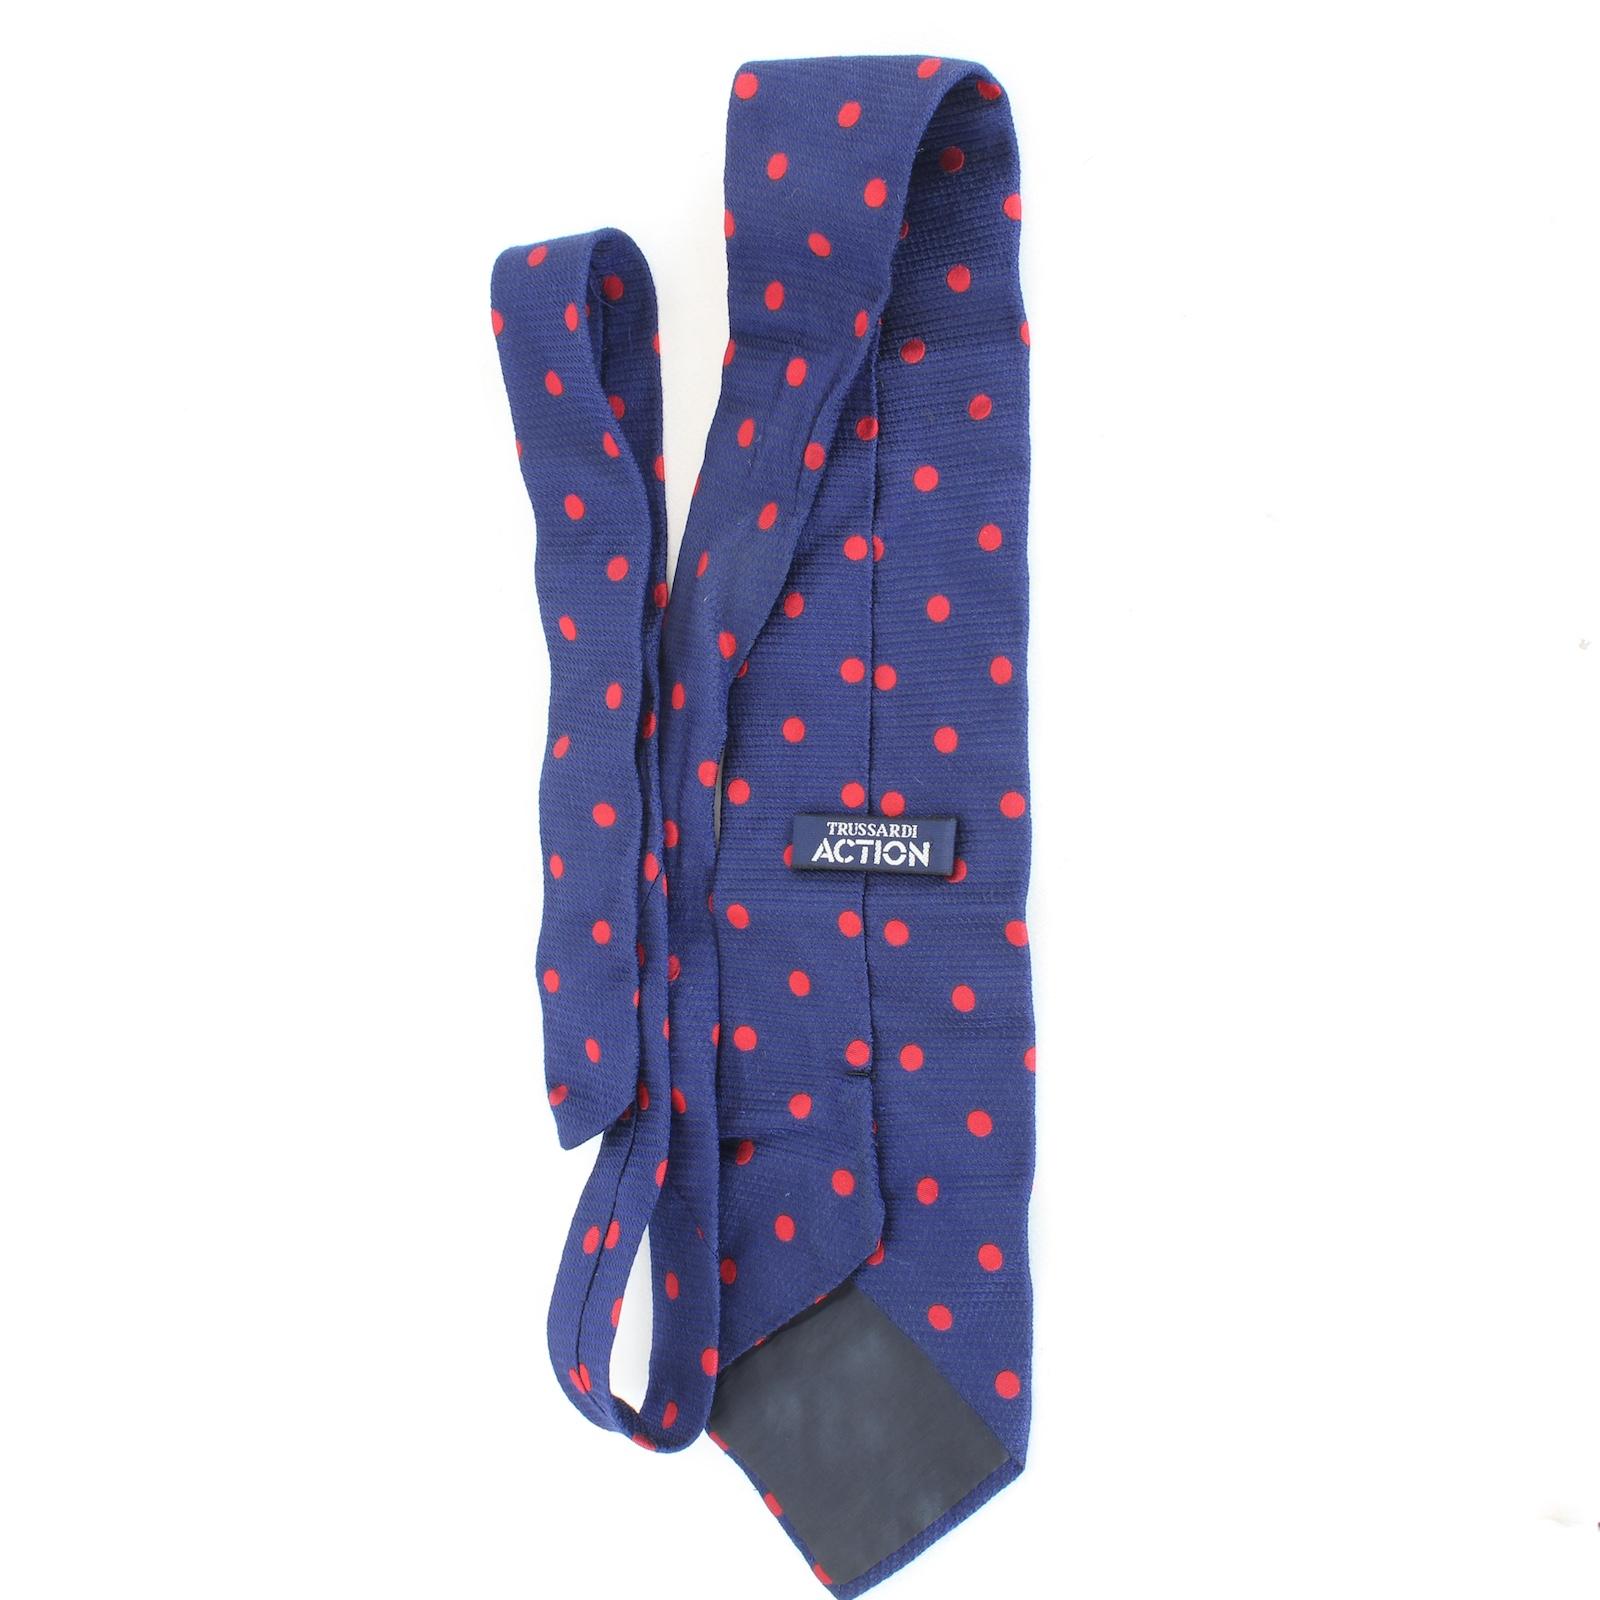 Trussardi elegante Vintage-Krawatte aus den 90ern. Blaue und rote Farbe mit Tupfenmuster, 100% Seidenstoff. Hergestellt in Italien.

Länge: 146 cm
Breite: 10 cm